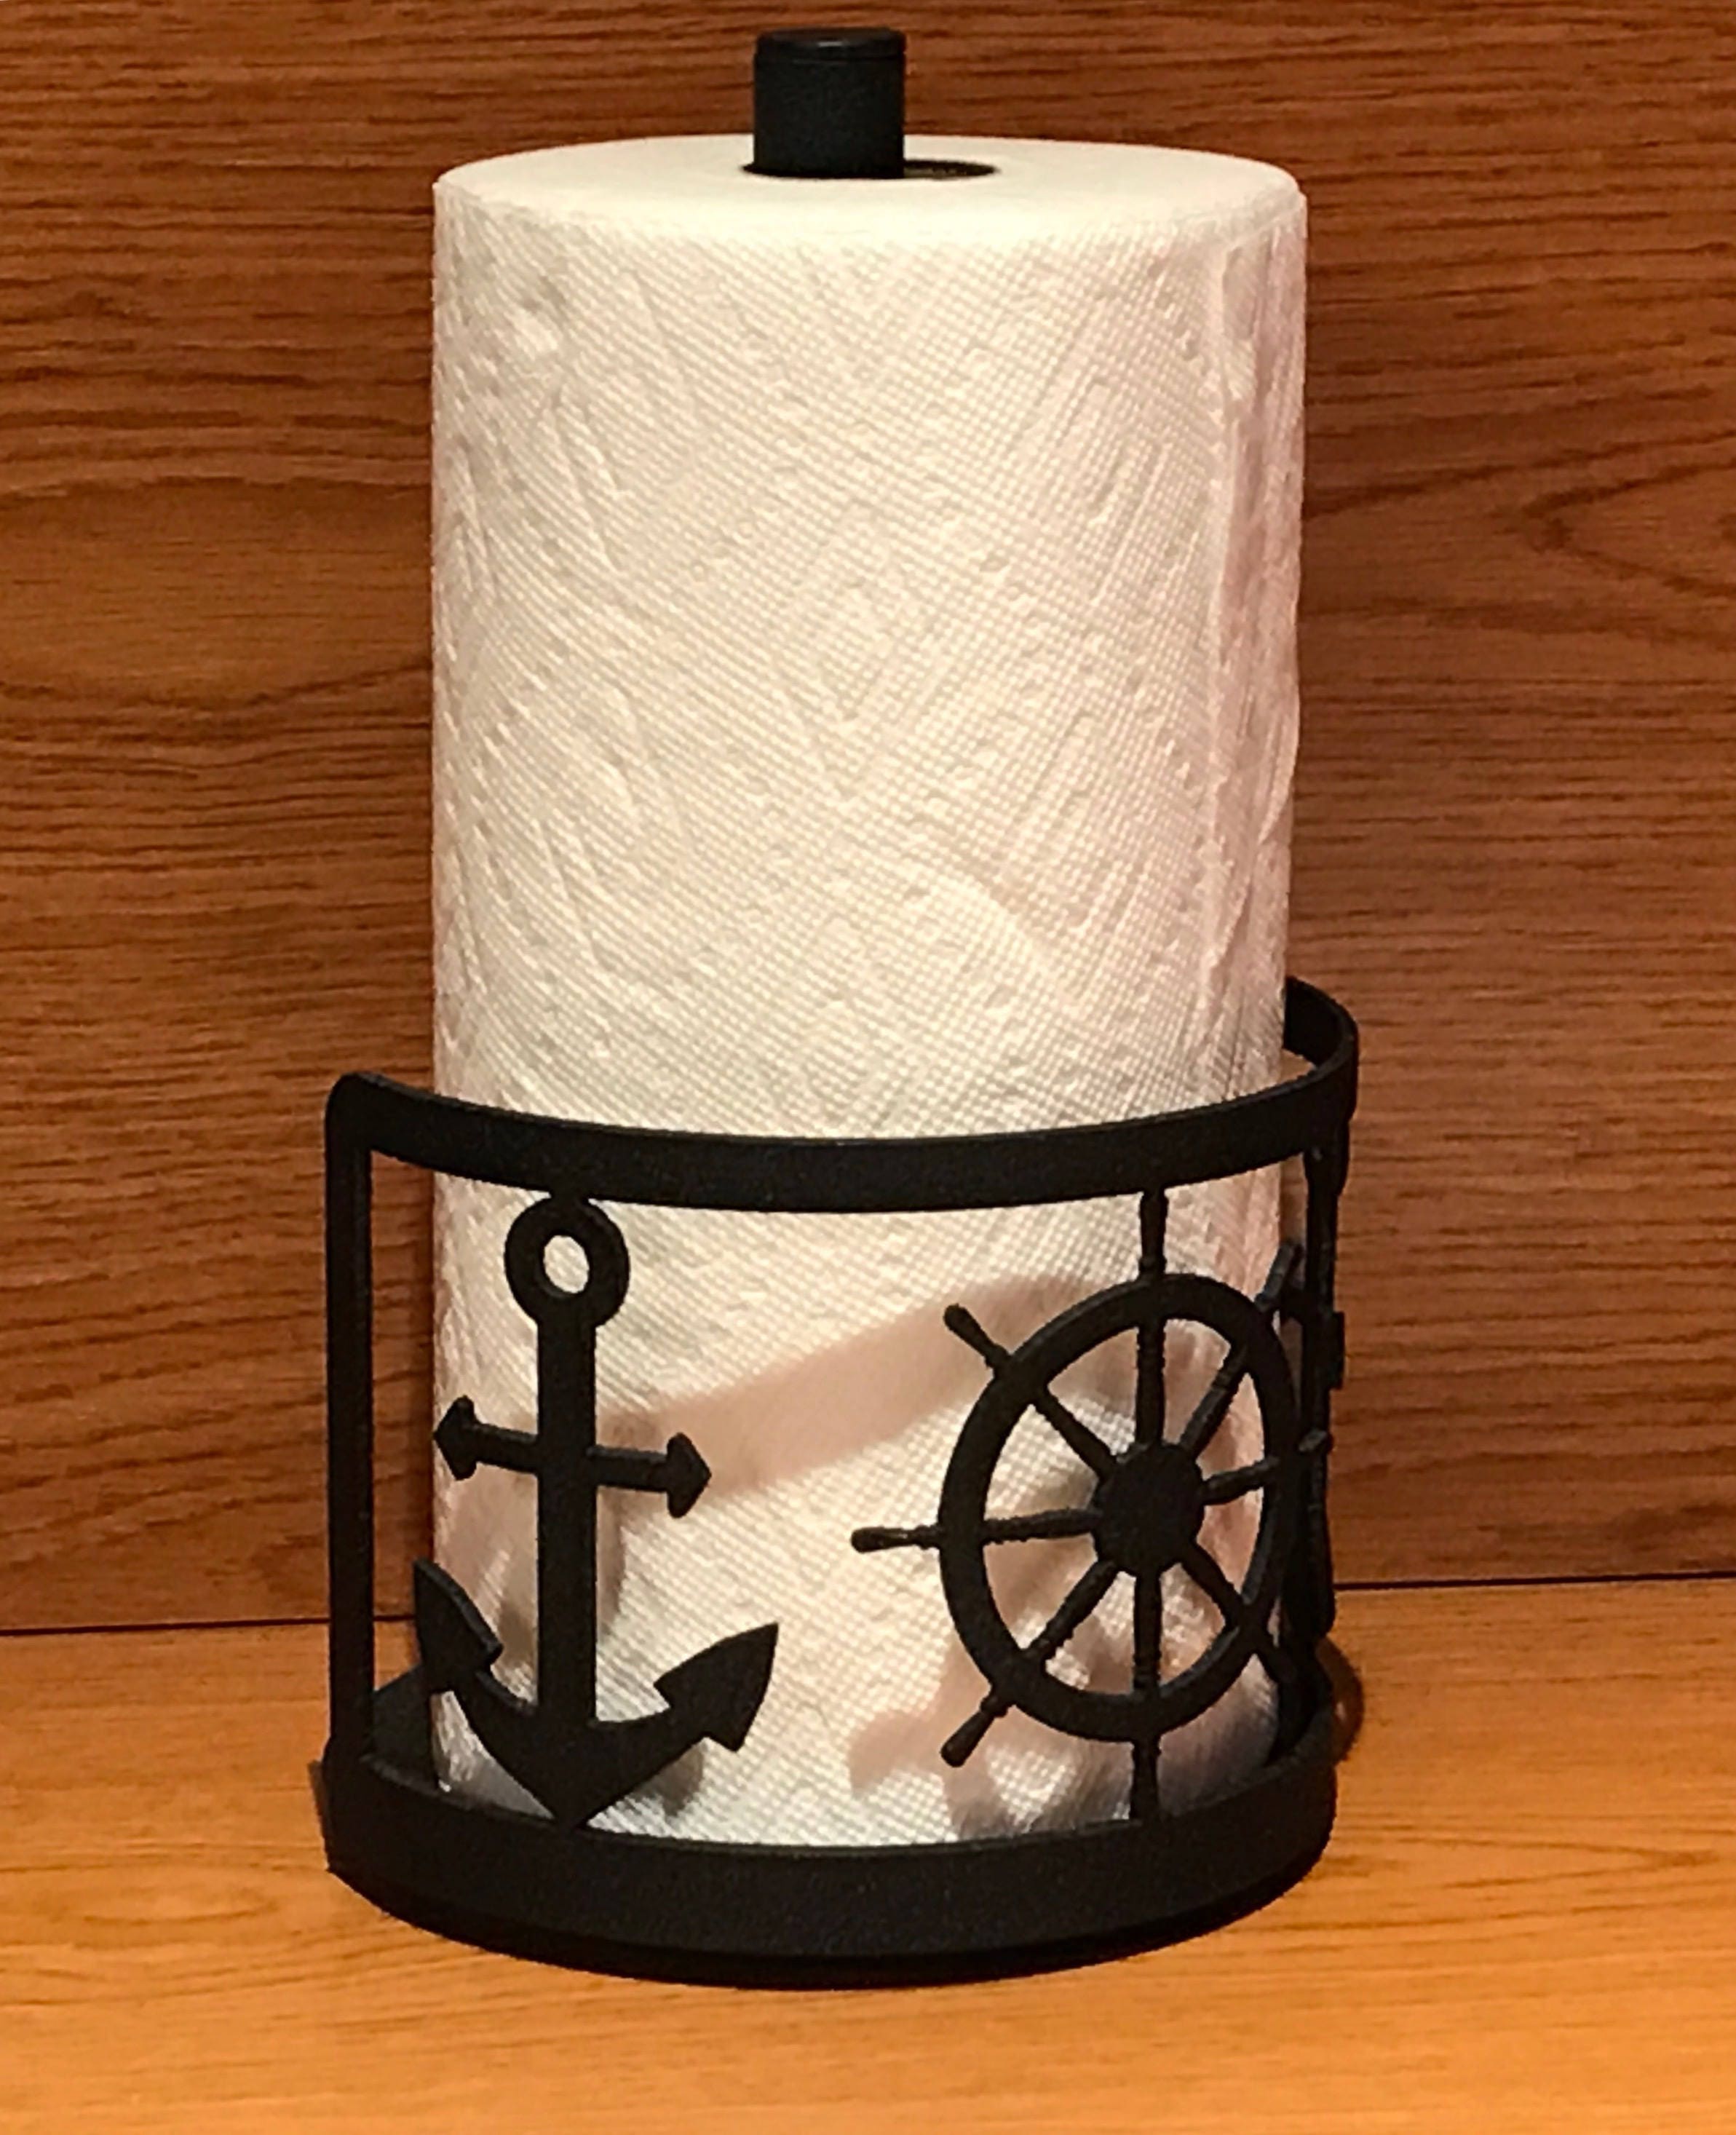 Paper Towel Holder, Sunflower Napkin Holder Retro Wrought Iron Flower Shape Paper  Towel Holder Dispenser Table Napkin Holder